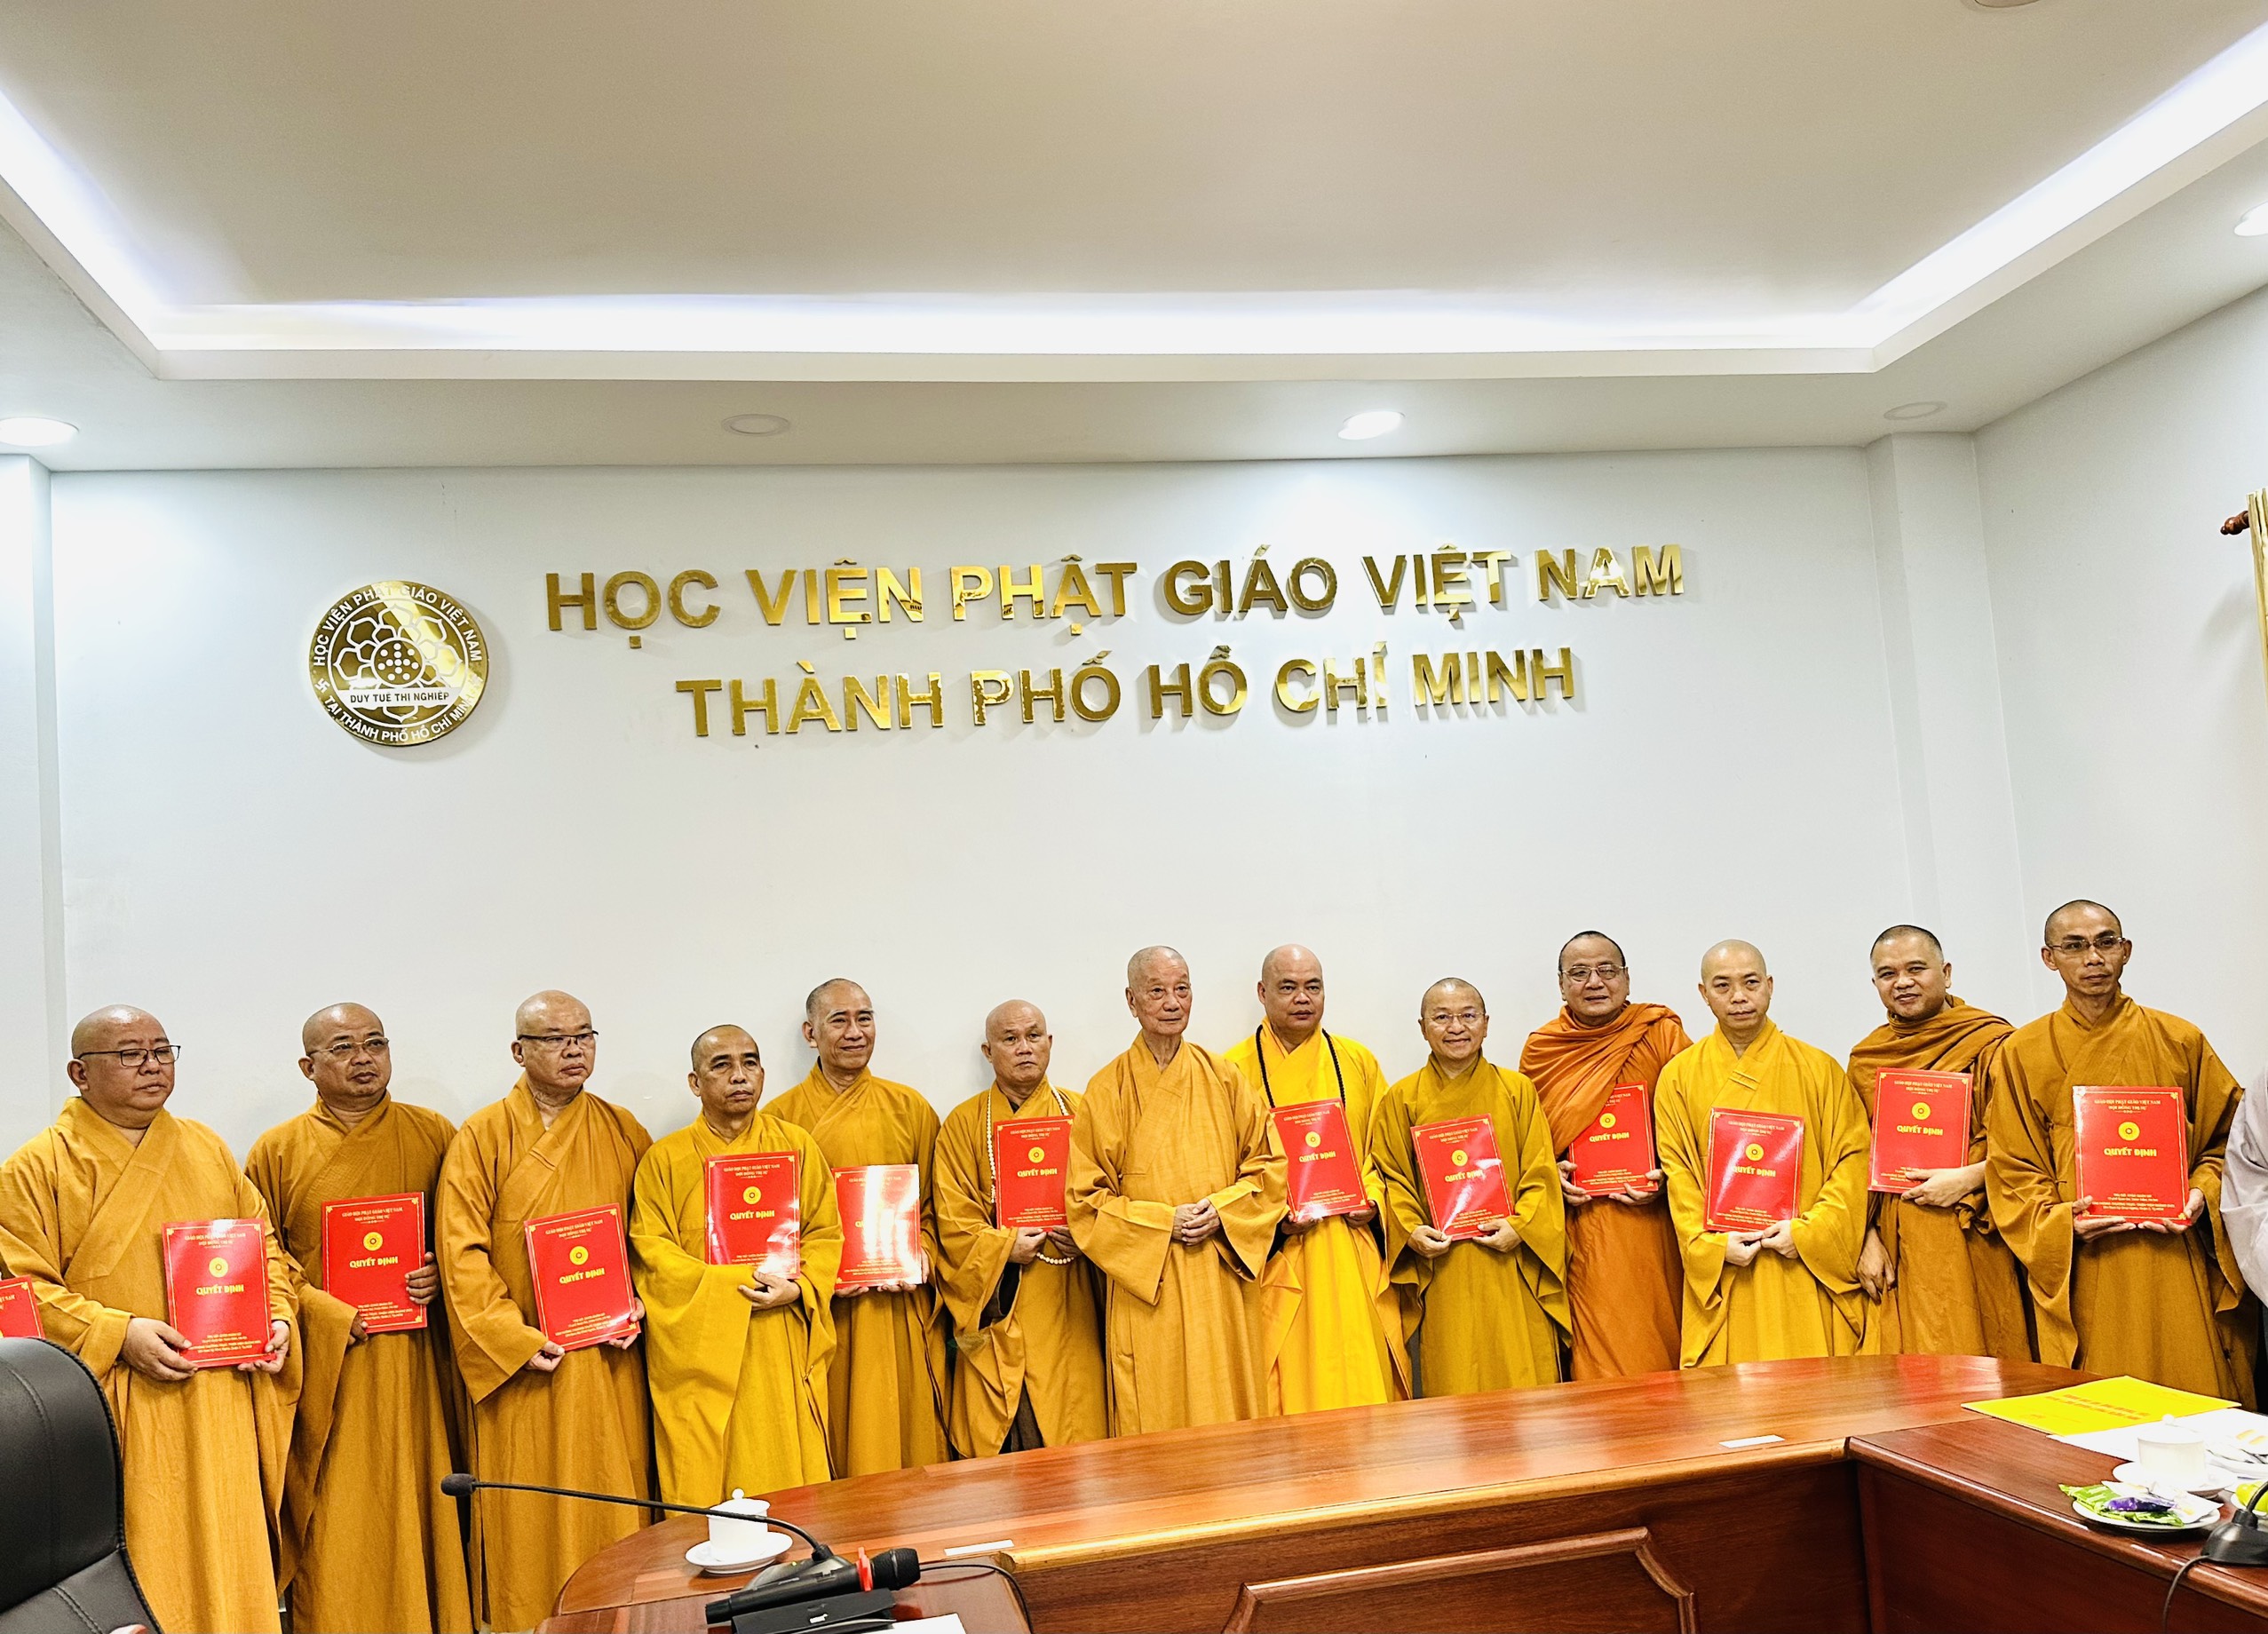 Thượng tọa Thích Nhật Từ tiếp tục giữ chức vụ Phó Viện trưởng Thường trực Học viện Phật giáo Việt Nam tại TP.HCM